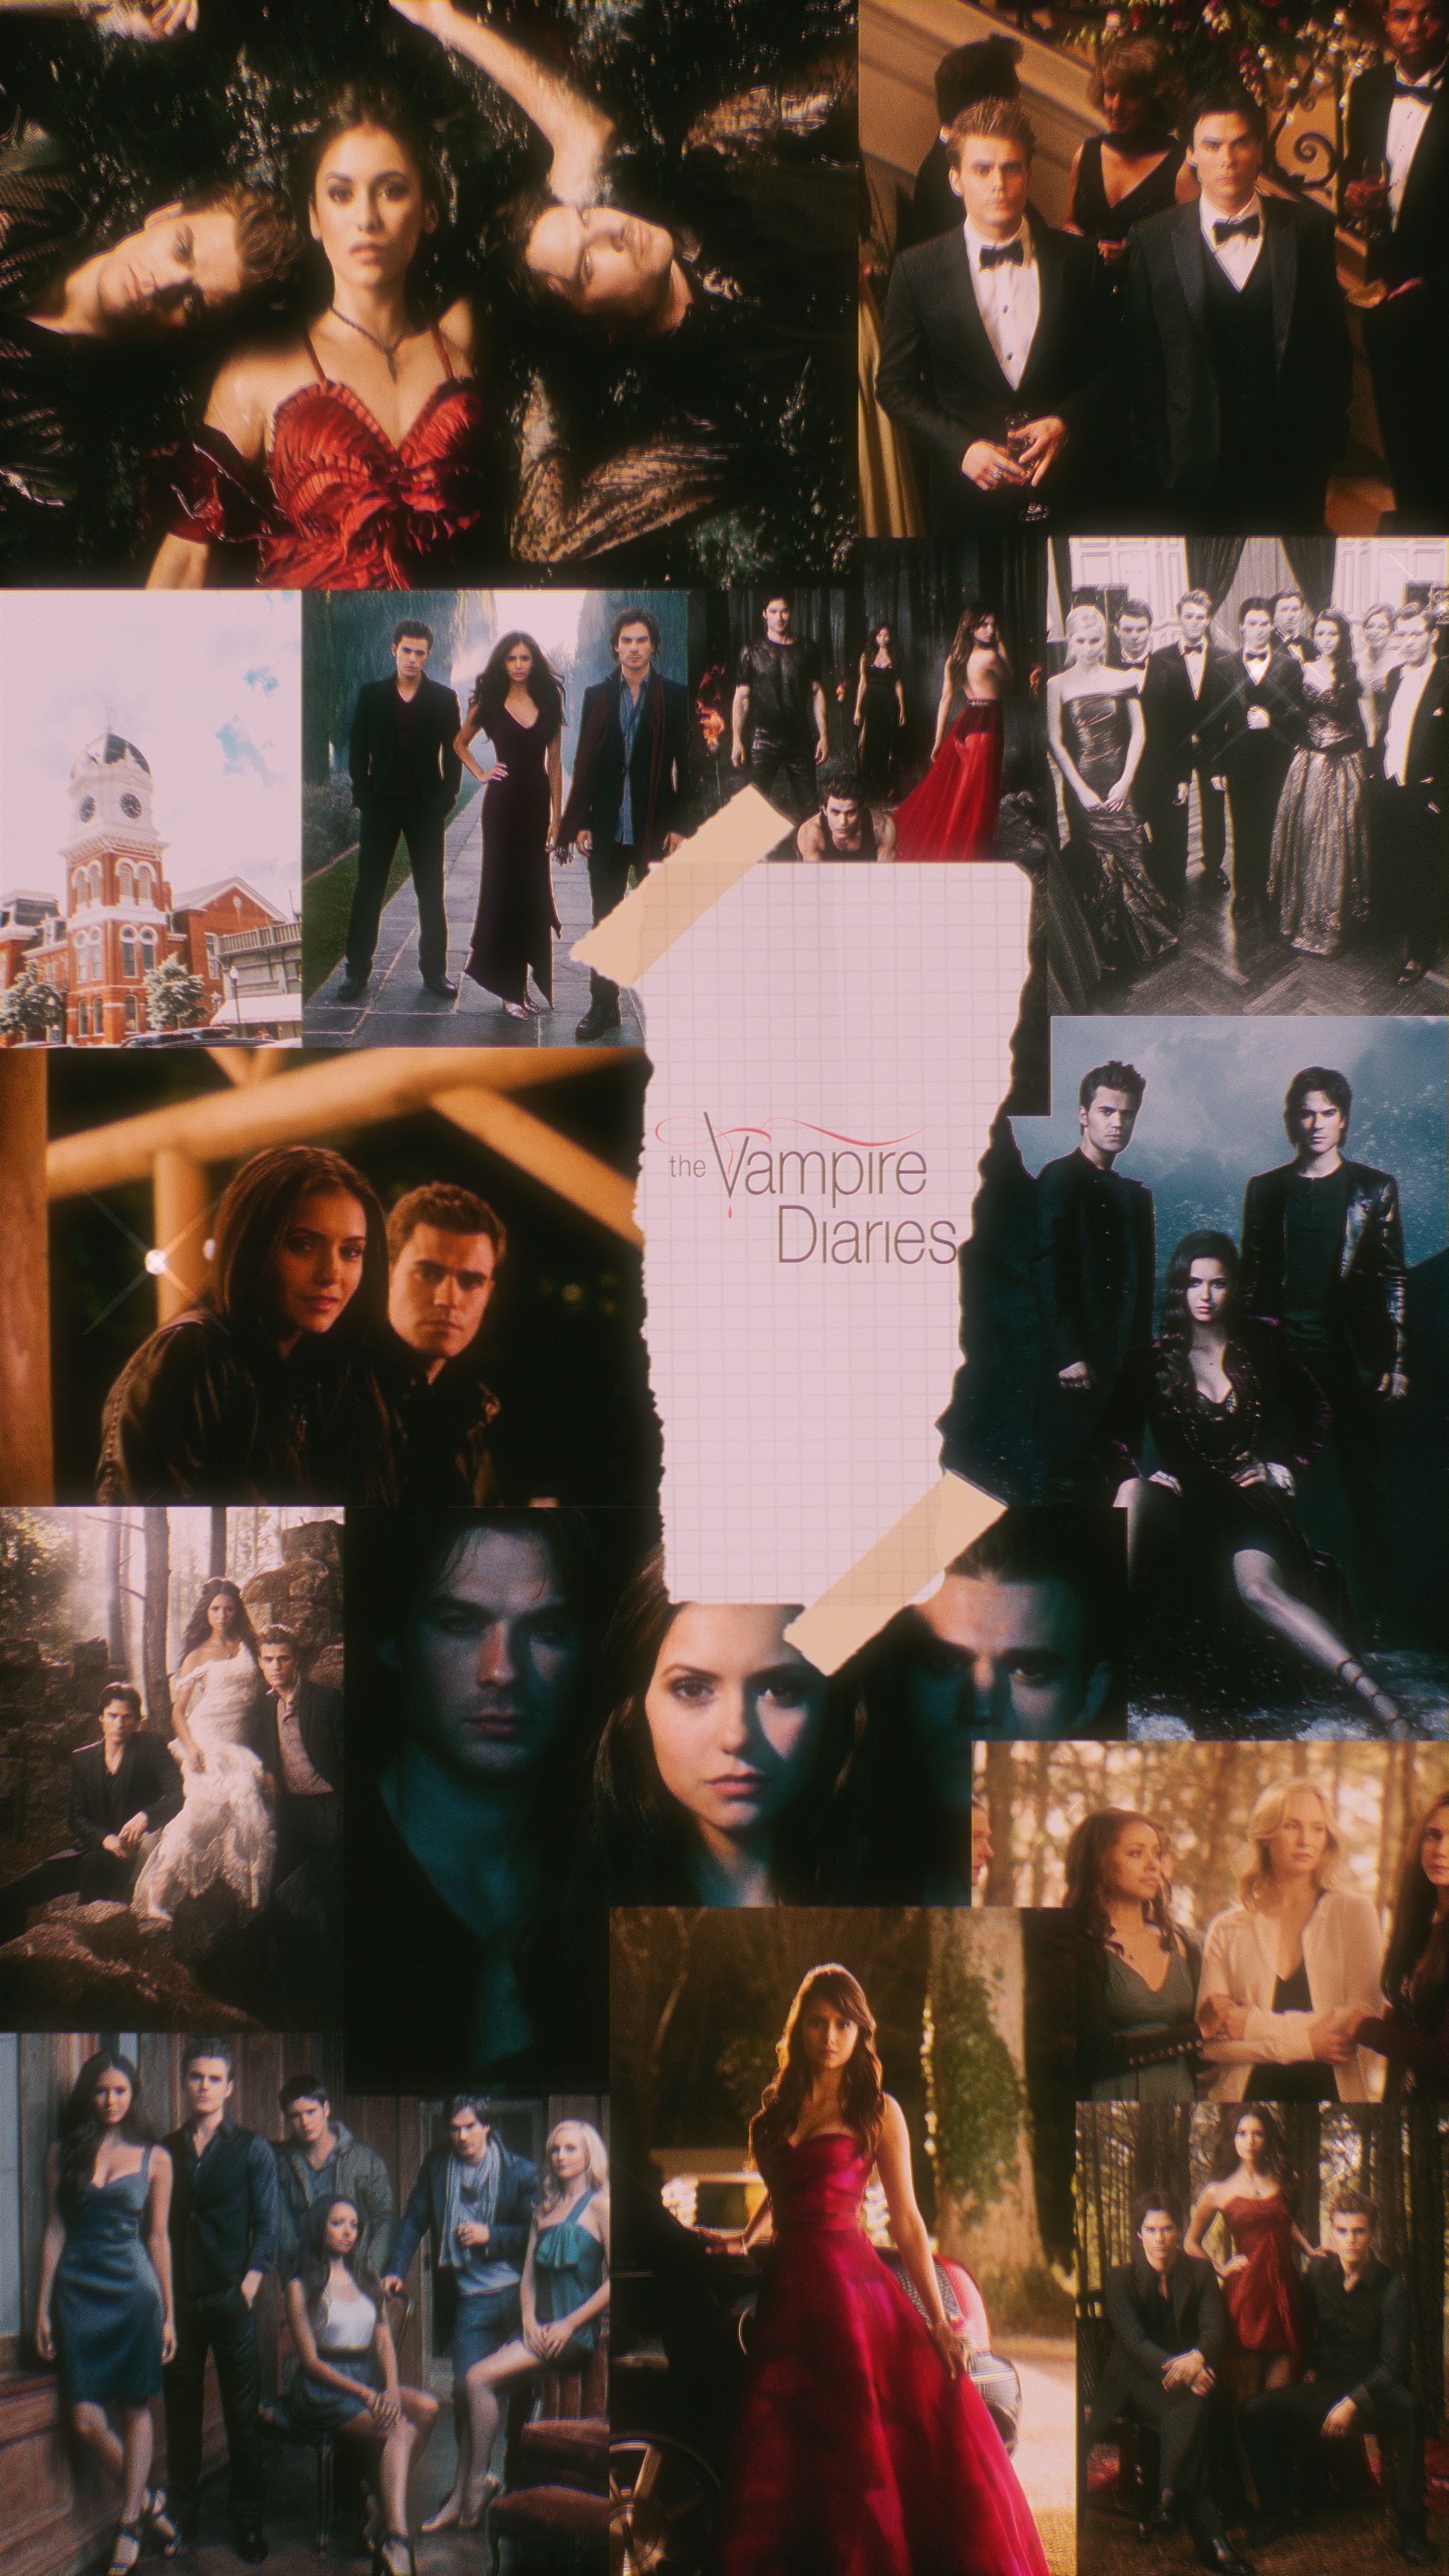 The vampire diaries. Vampire diaries, Vampire diaries wallpaper, Vampire